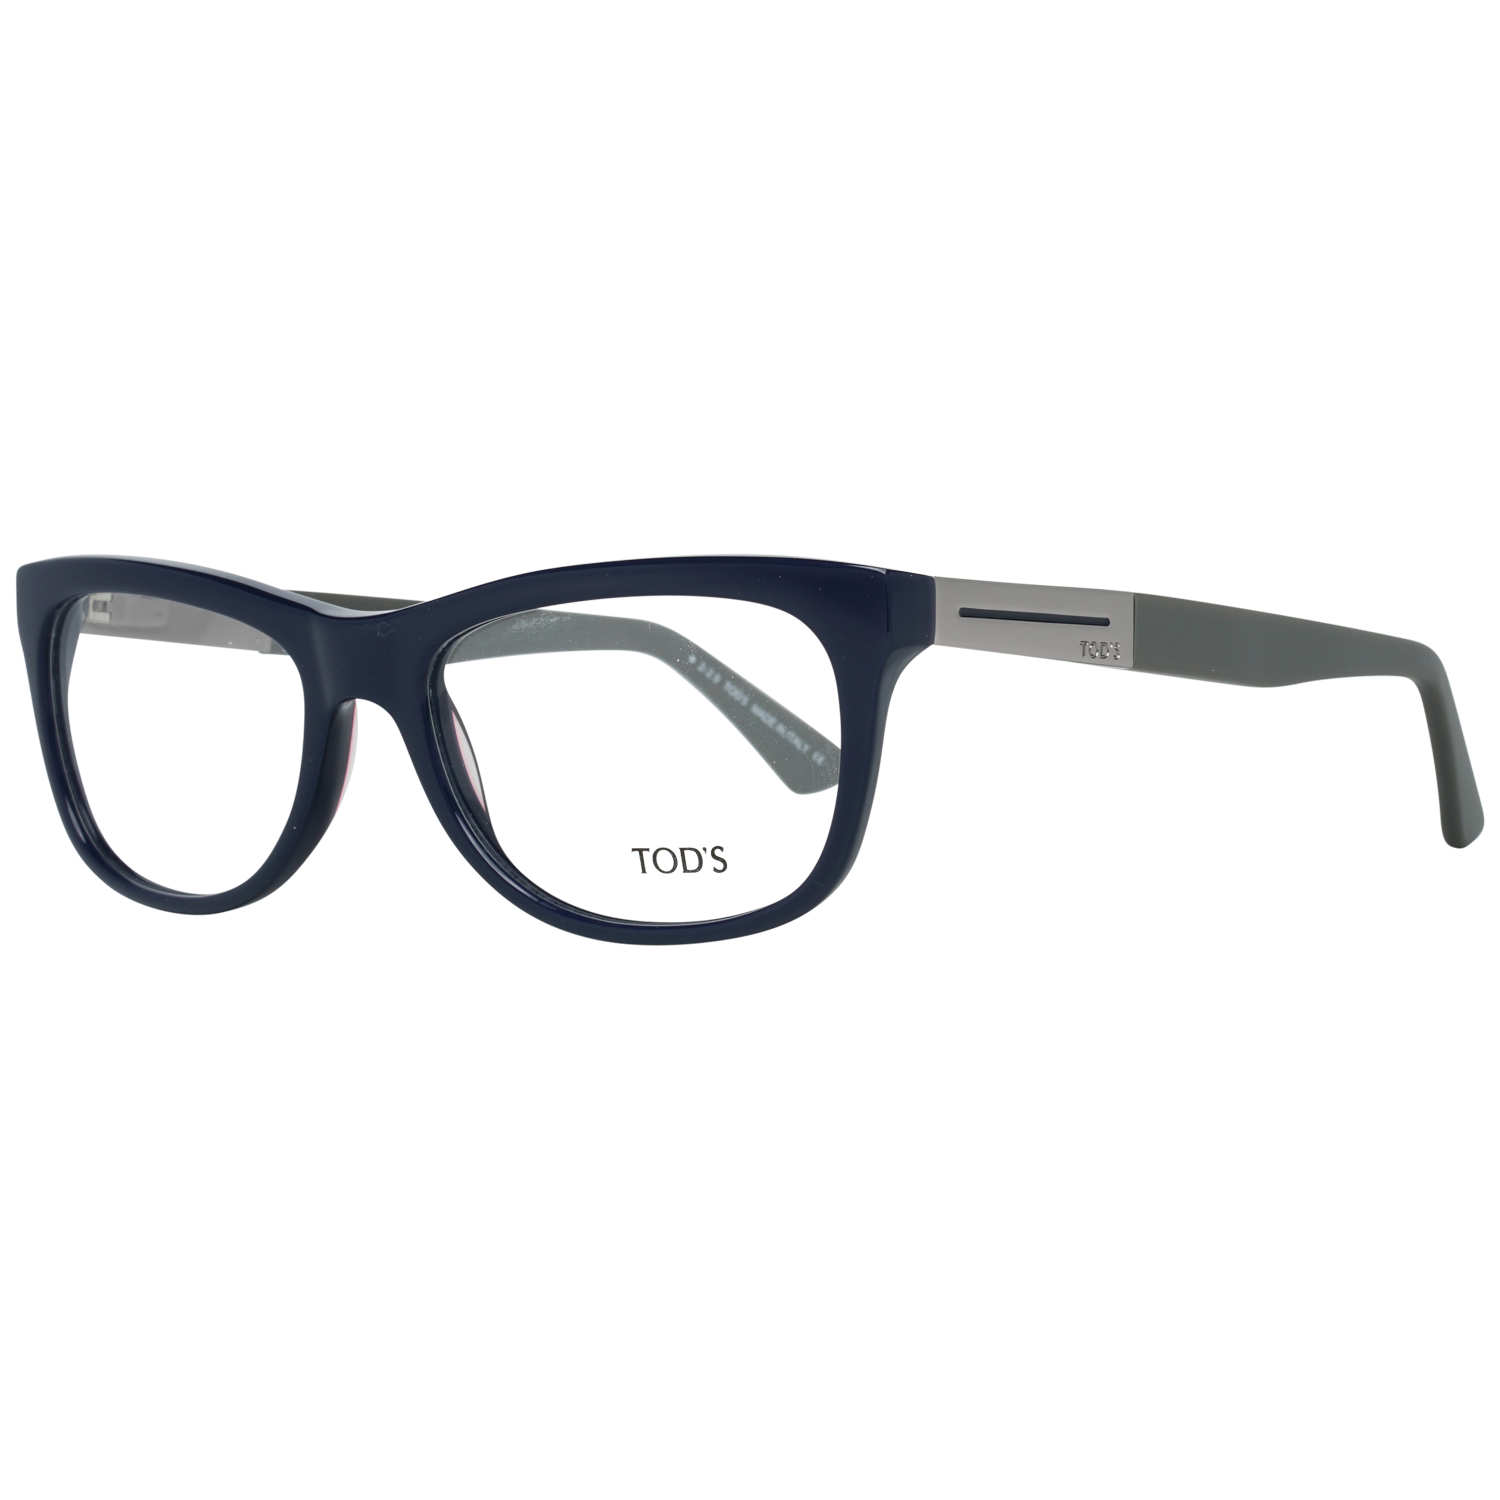 Tods Frames Tods Glasses Men's Blue Rectangle Frames TO5124 092 54mm Eyeglasses Eyewear UK USA Australia 